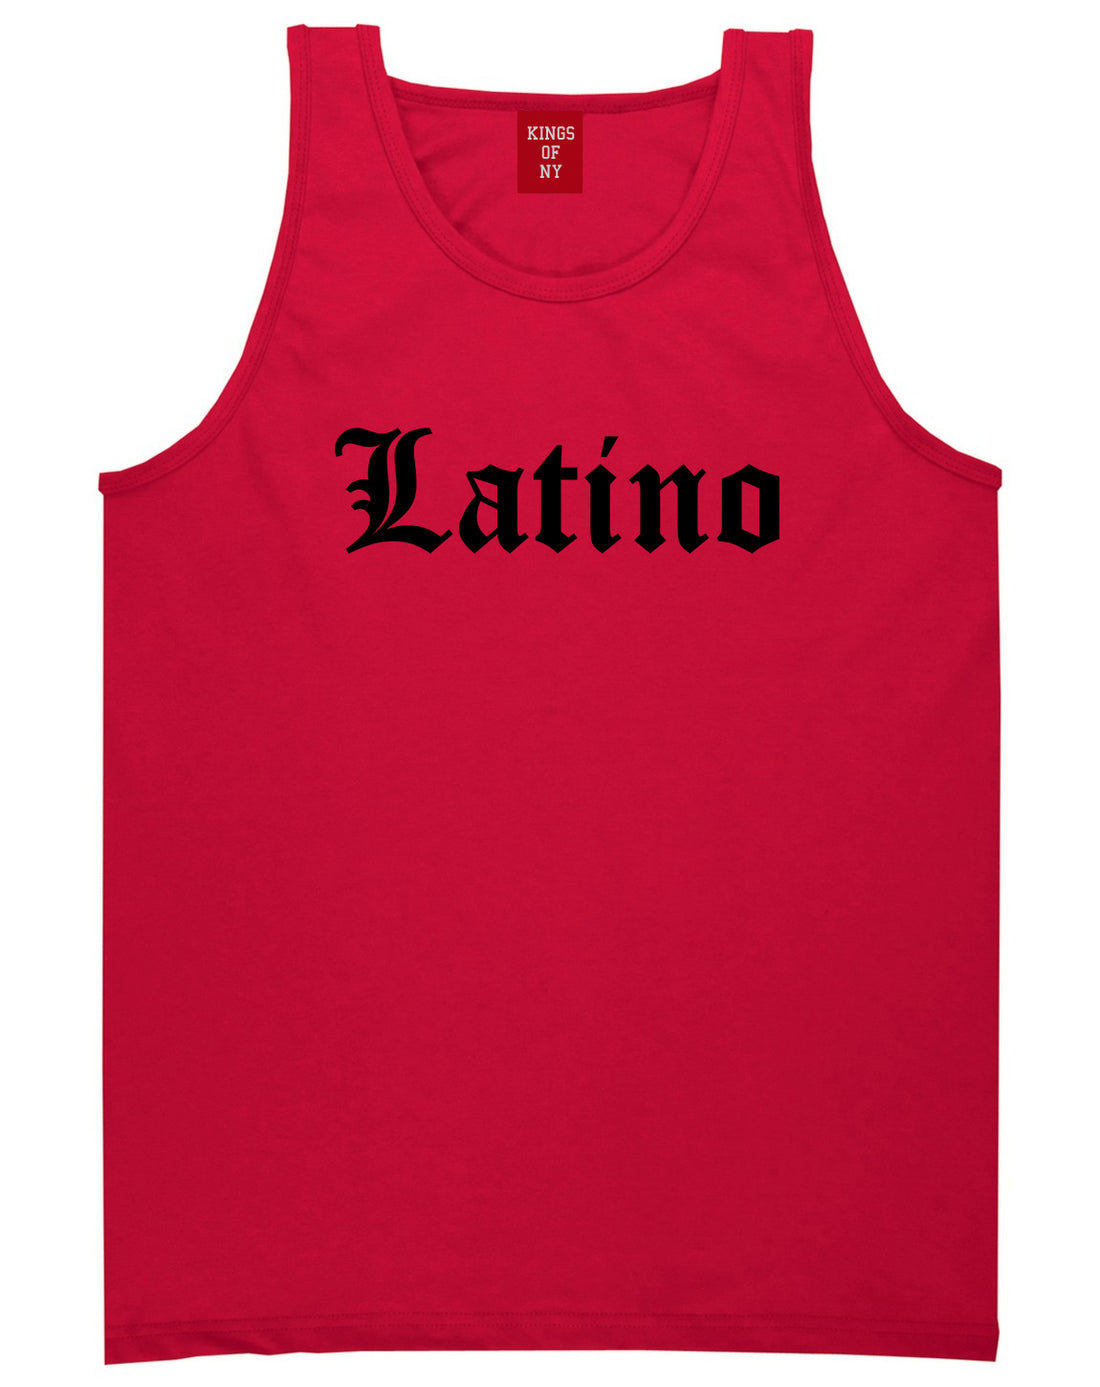 Latino Old English Spanish Mens Tank Top Shirt Red by Kings Of NY